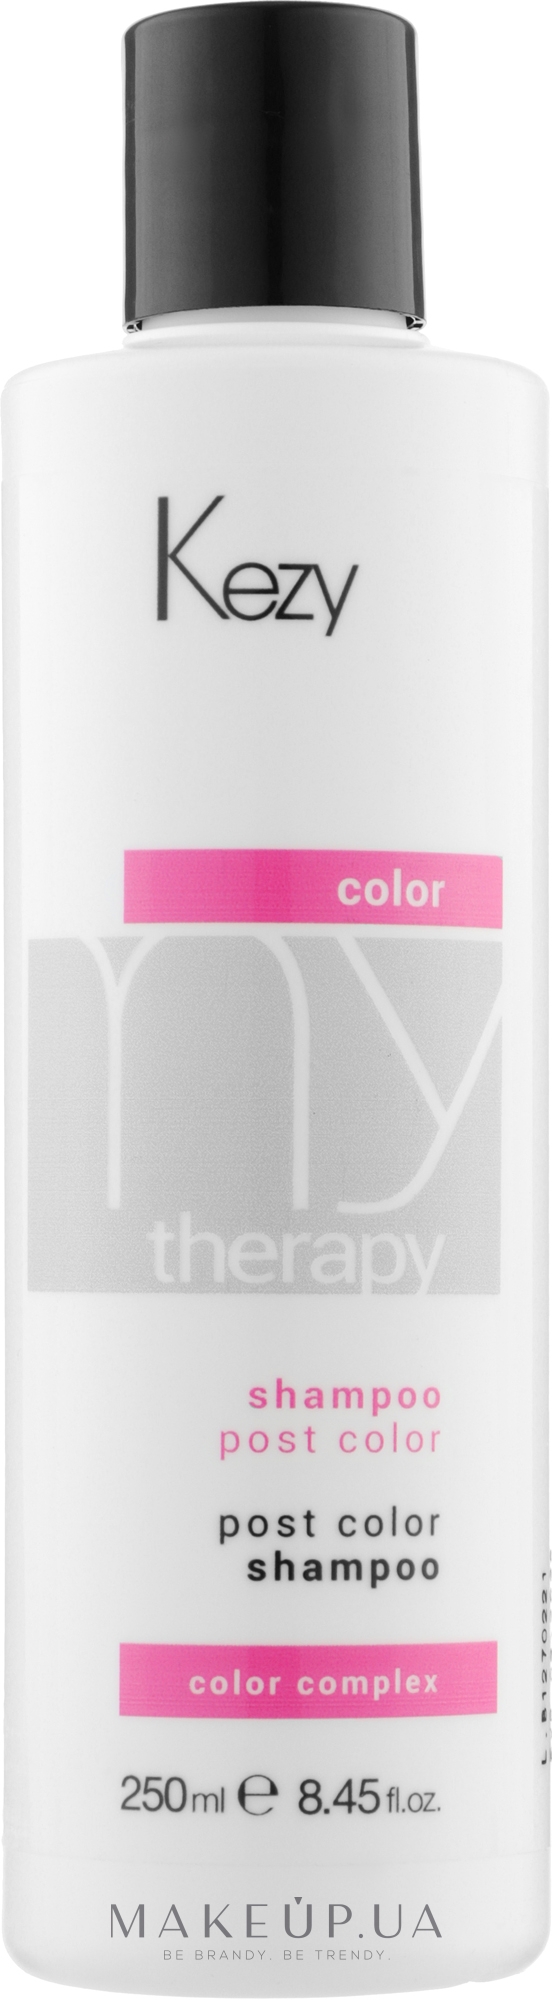 Шампунь для окрашенных волос с экстрактом граната - Kezy My Therapy Post Color Shampoo — фото 250ml